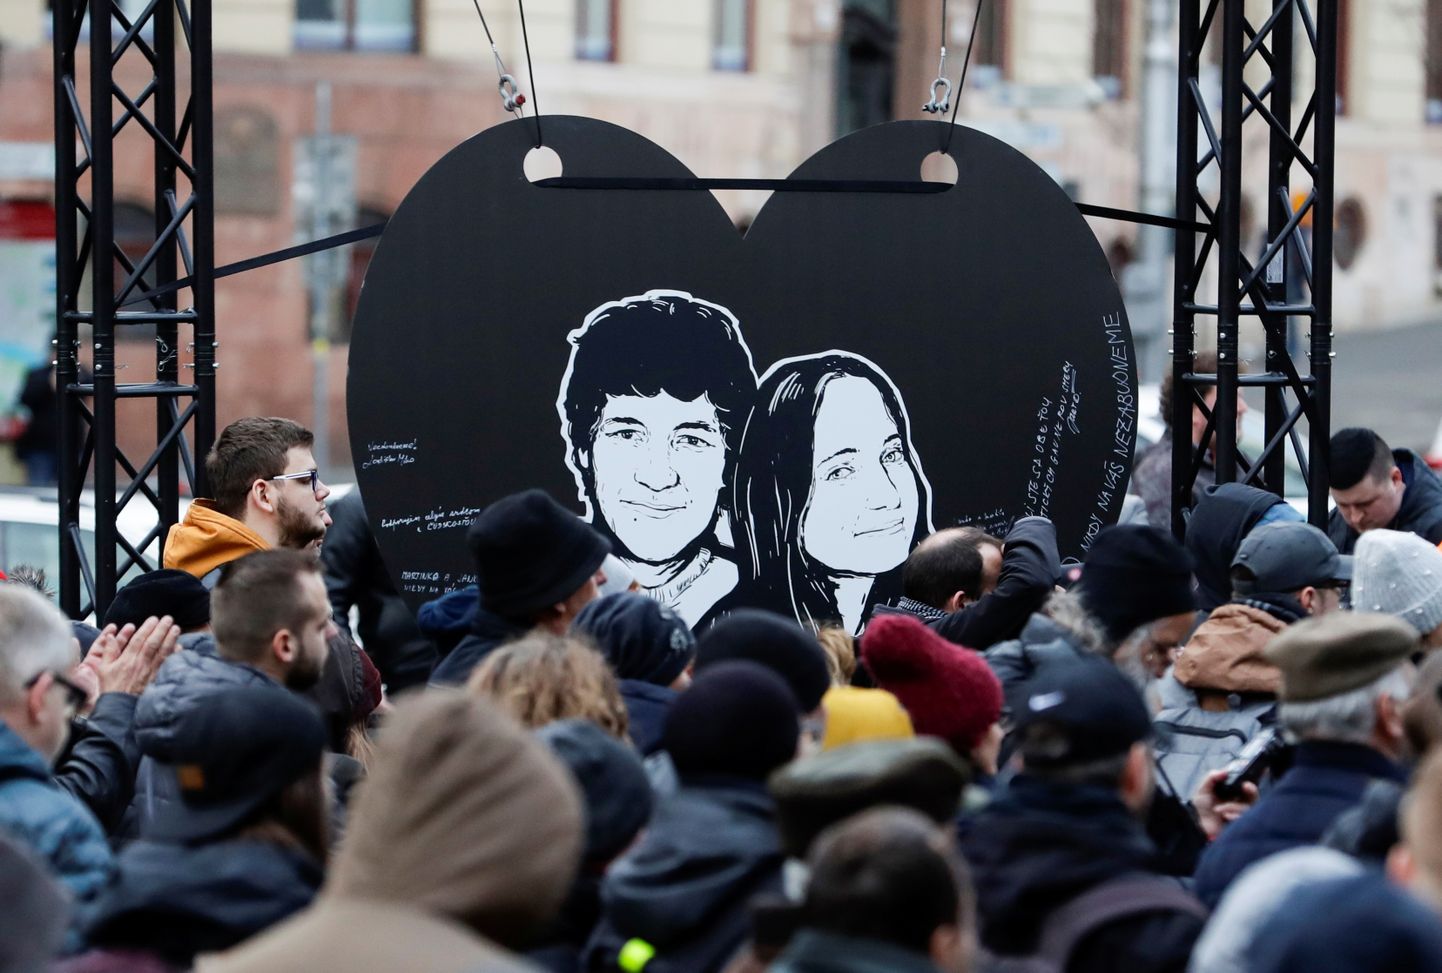 27-летний журналист Ян Куцияк и его невеста Мартина Кушнирова были застрелены в феврале 2018 года у себя дома в 65 километрах от Братиславы.